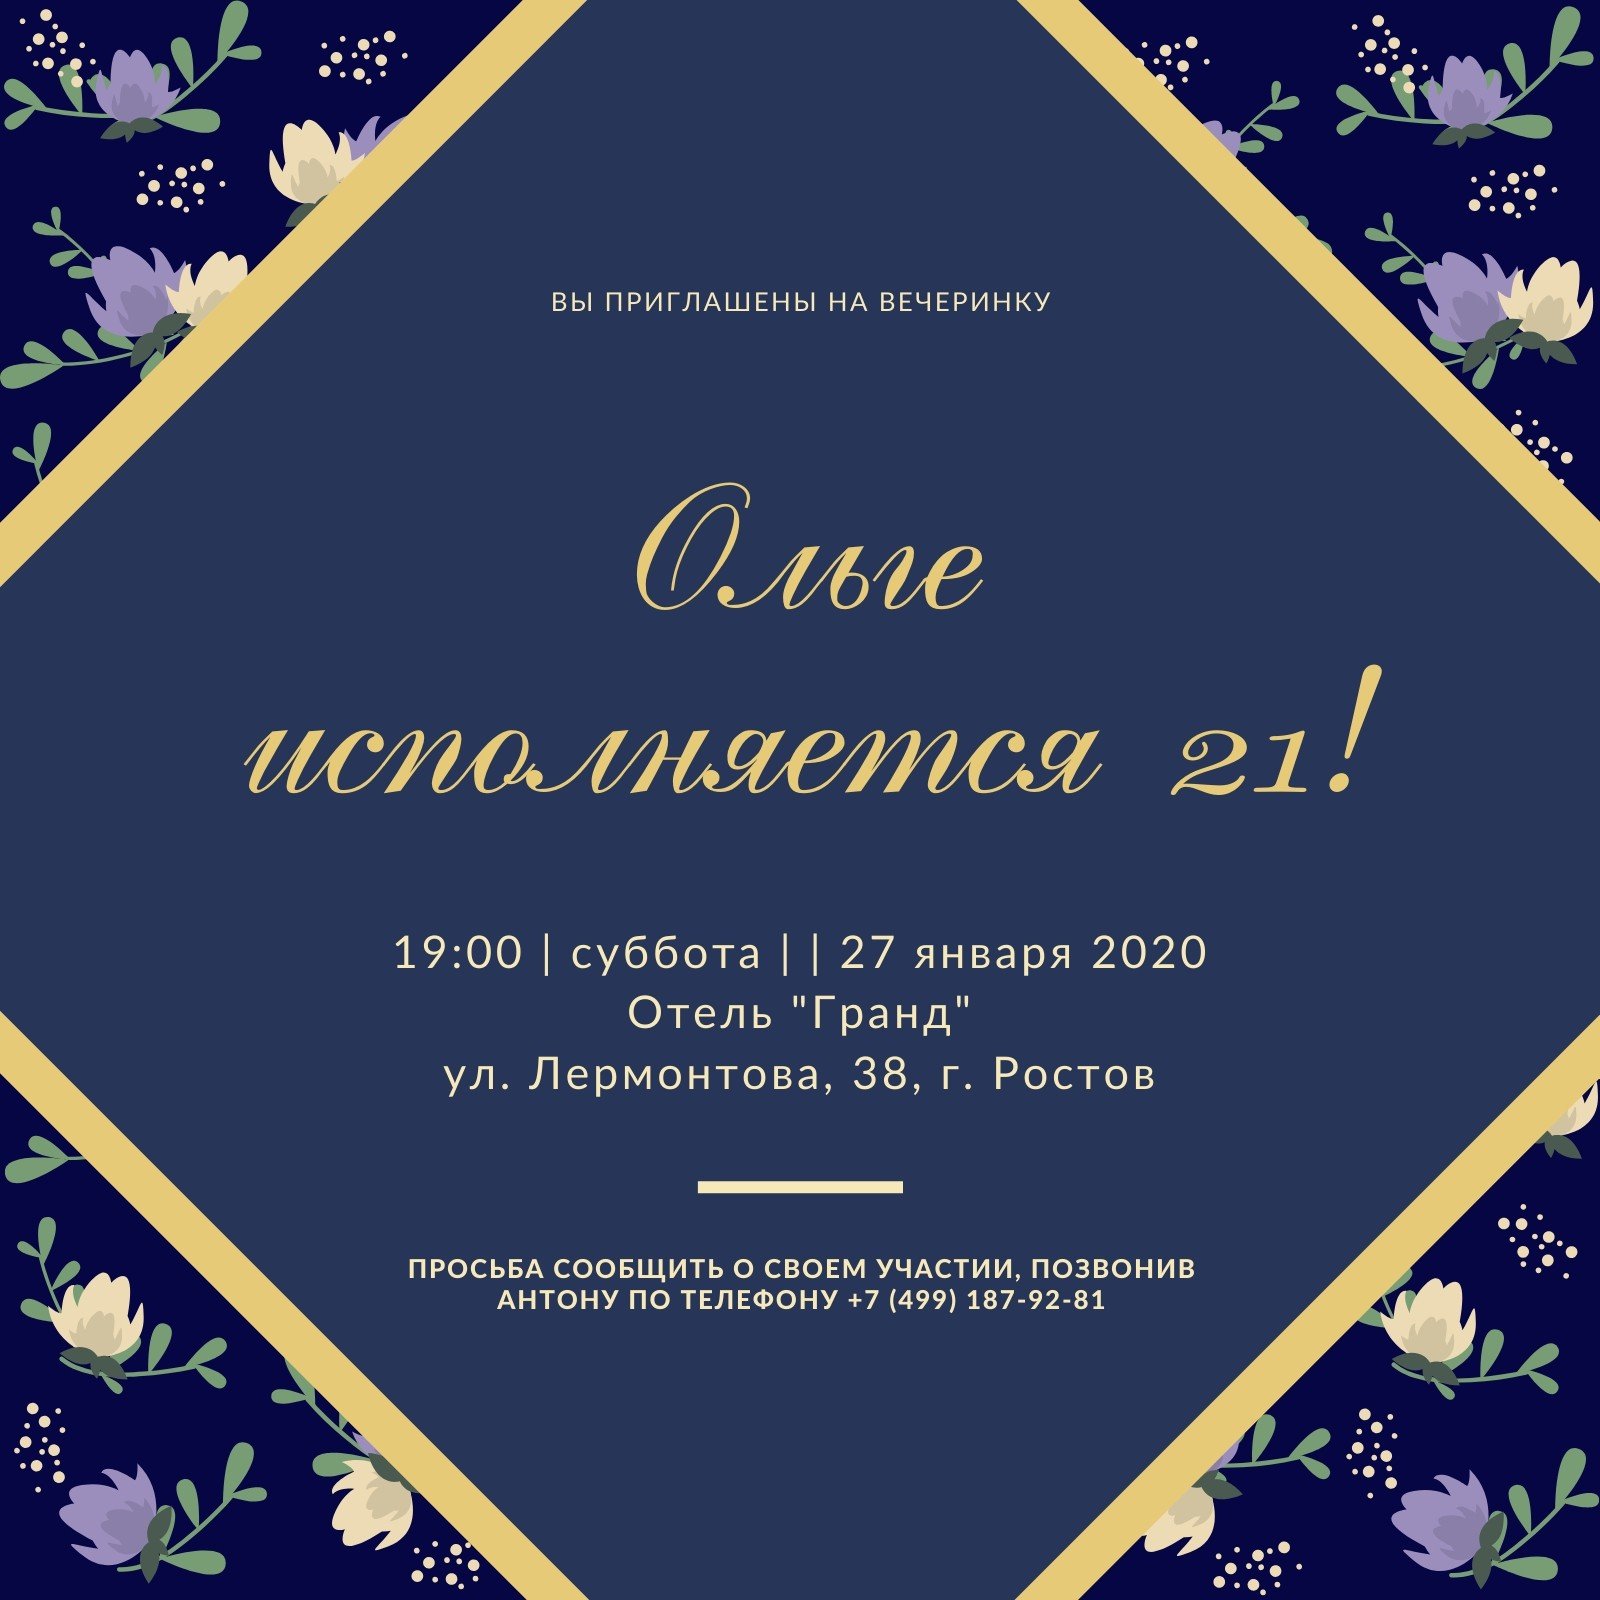 Приглашение в русском стиле — 3 ответов | форум Babyblog